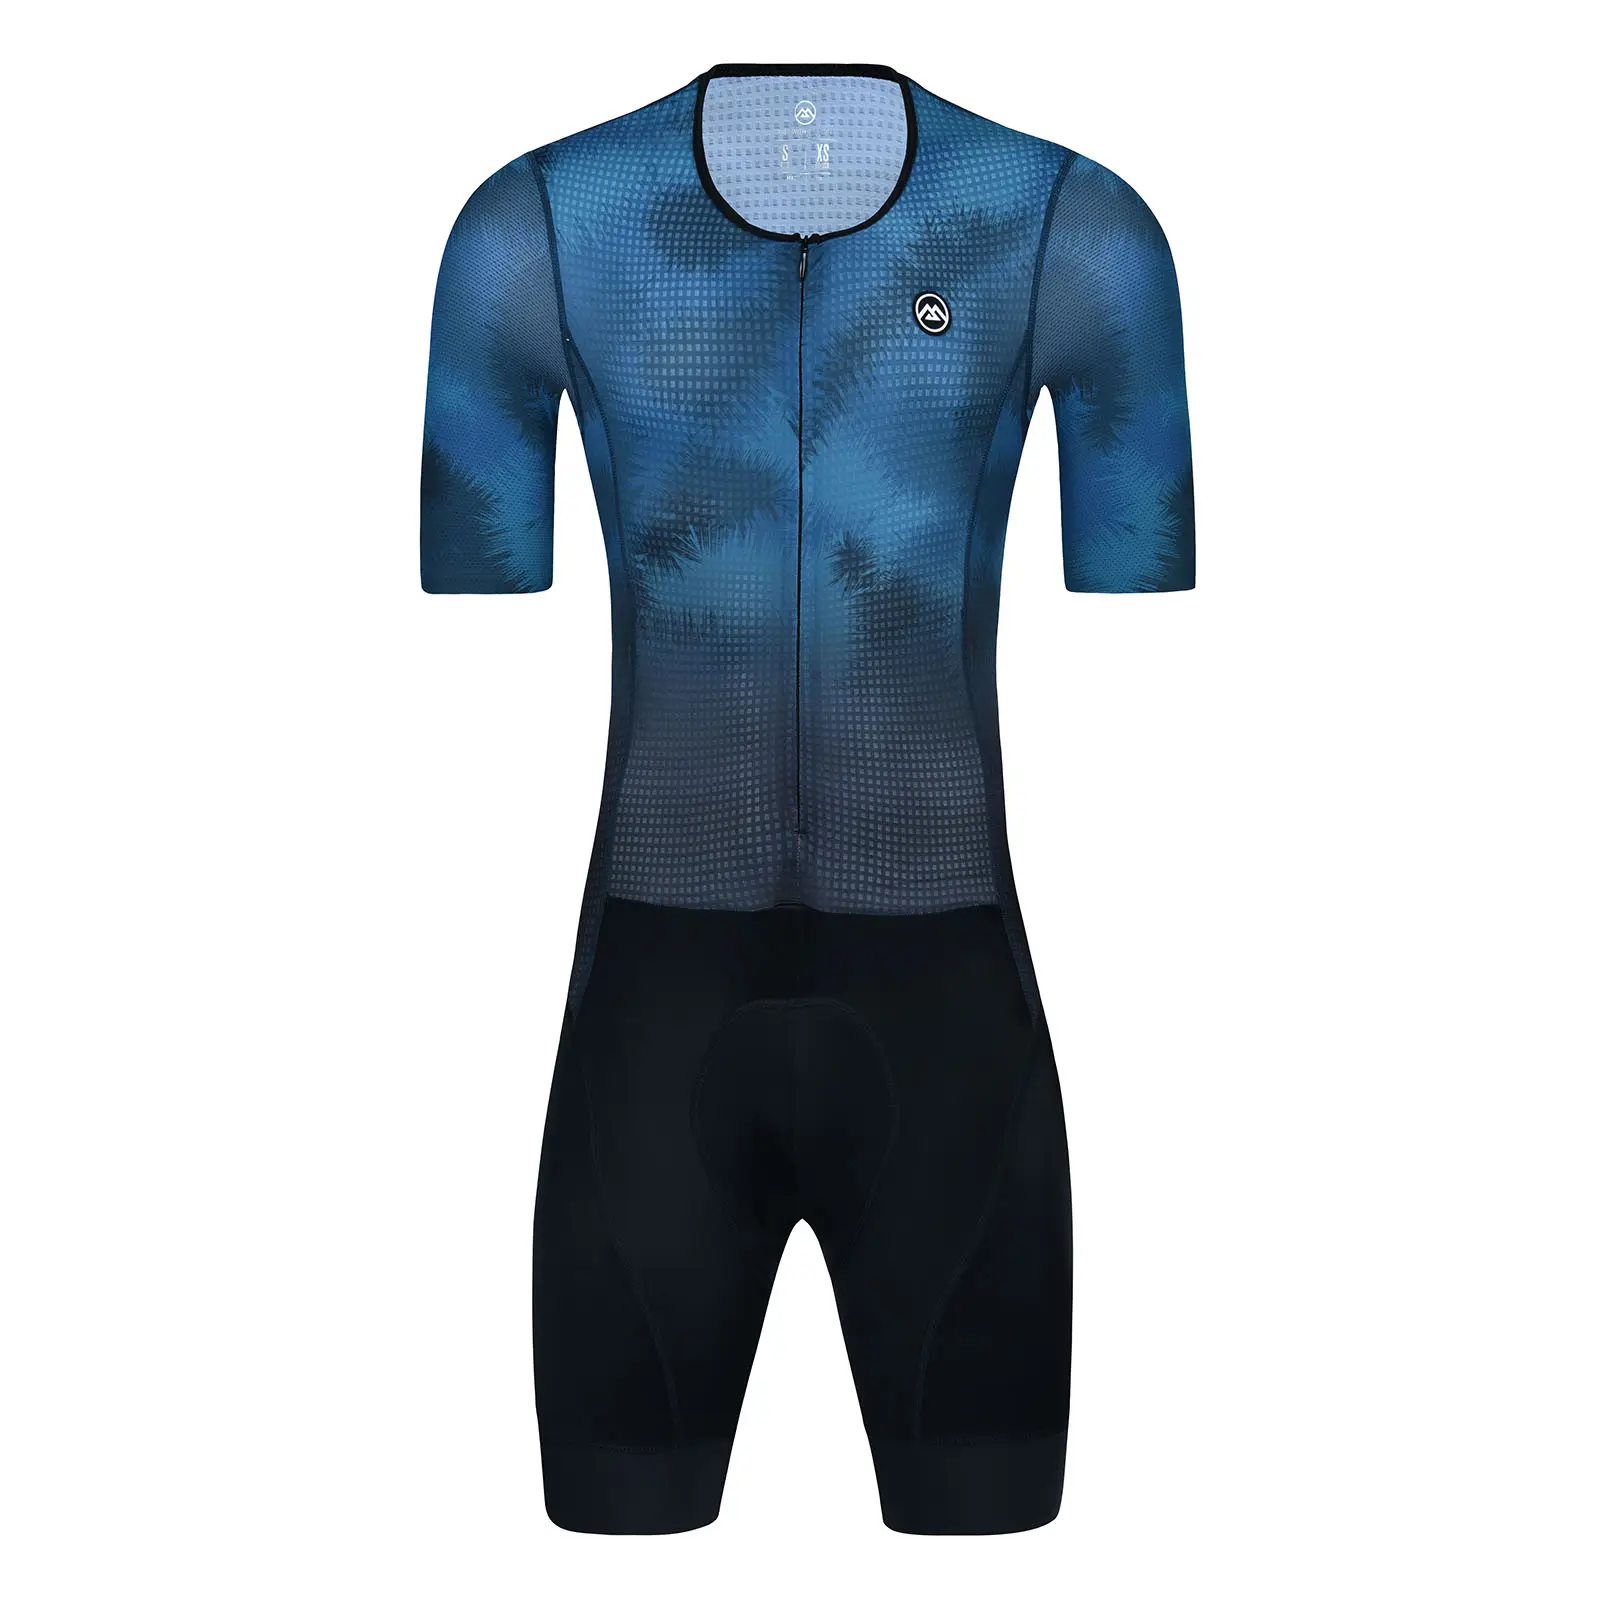 Monton OEM süblimasyon baskı özel takım bisiklet trisuit bisiklet cilt suit bisiklet hız takım elbise ısmarlama bisiklet triatlon atleti